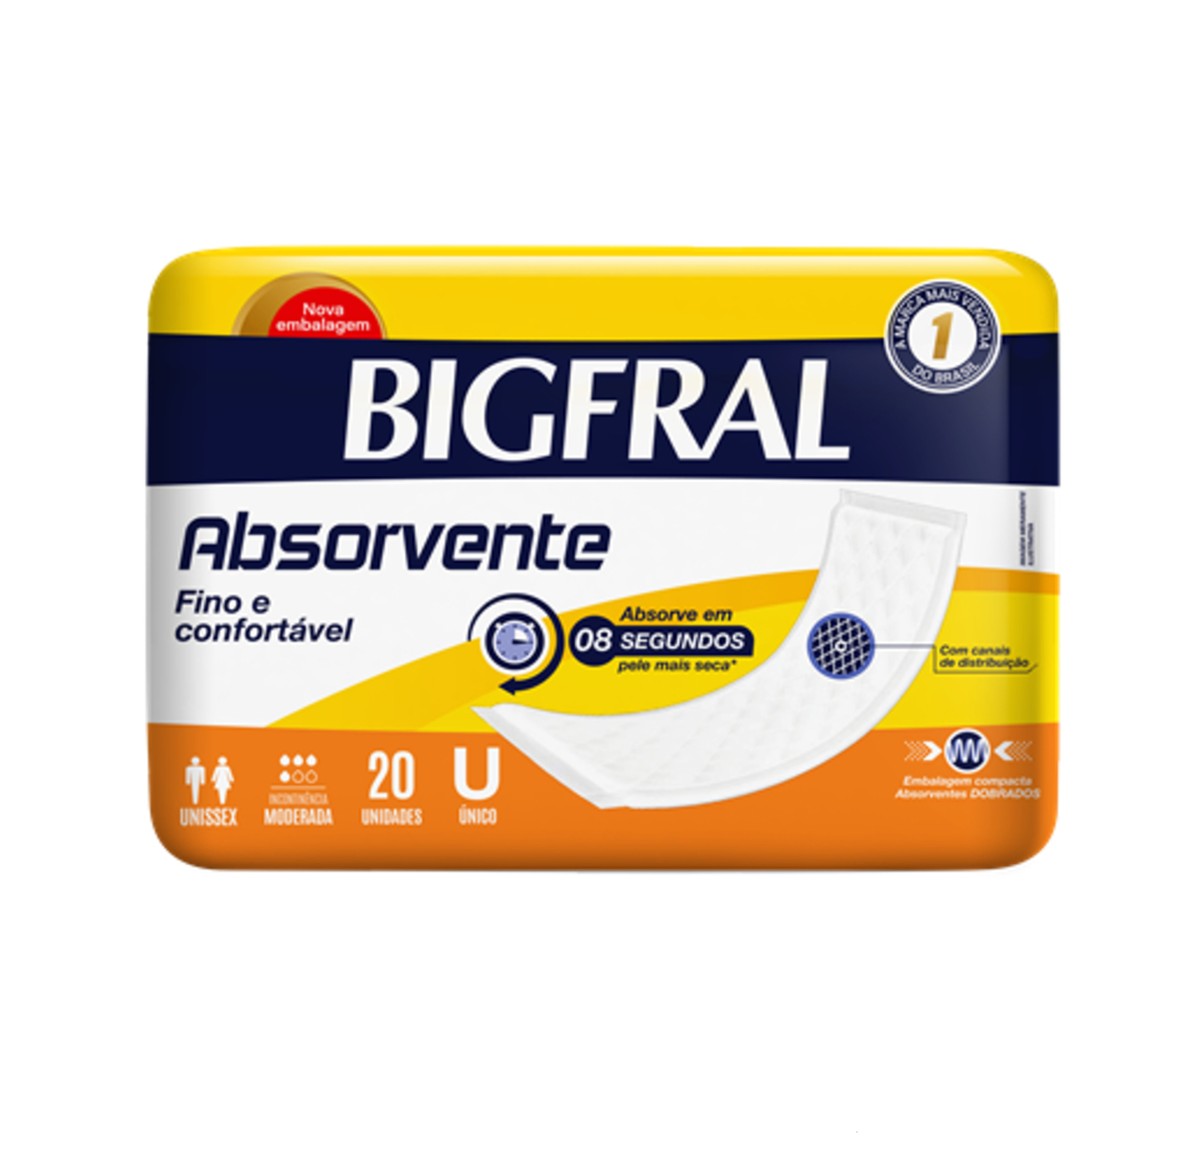 Foto do produto Absorvente Big Maxi com 20 unidades - Bigfral